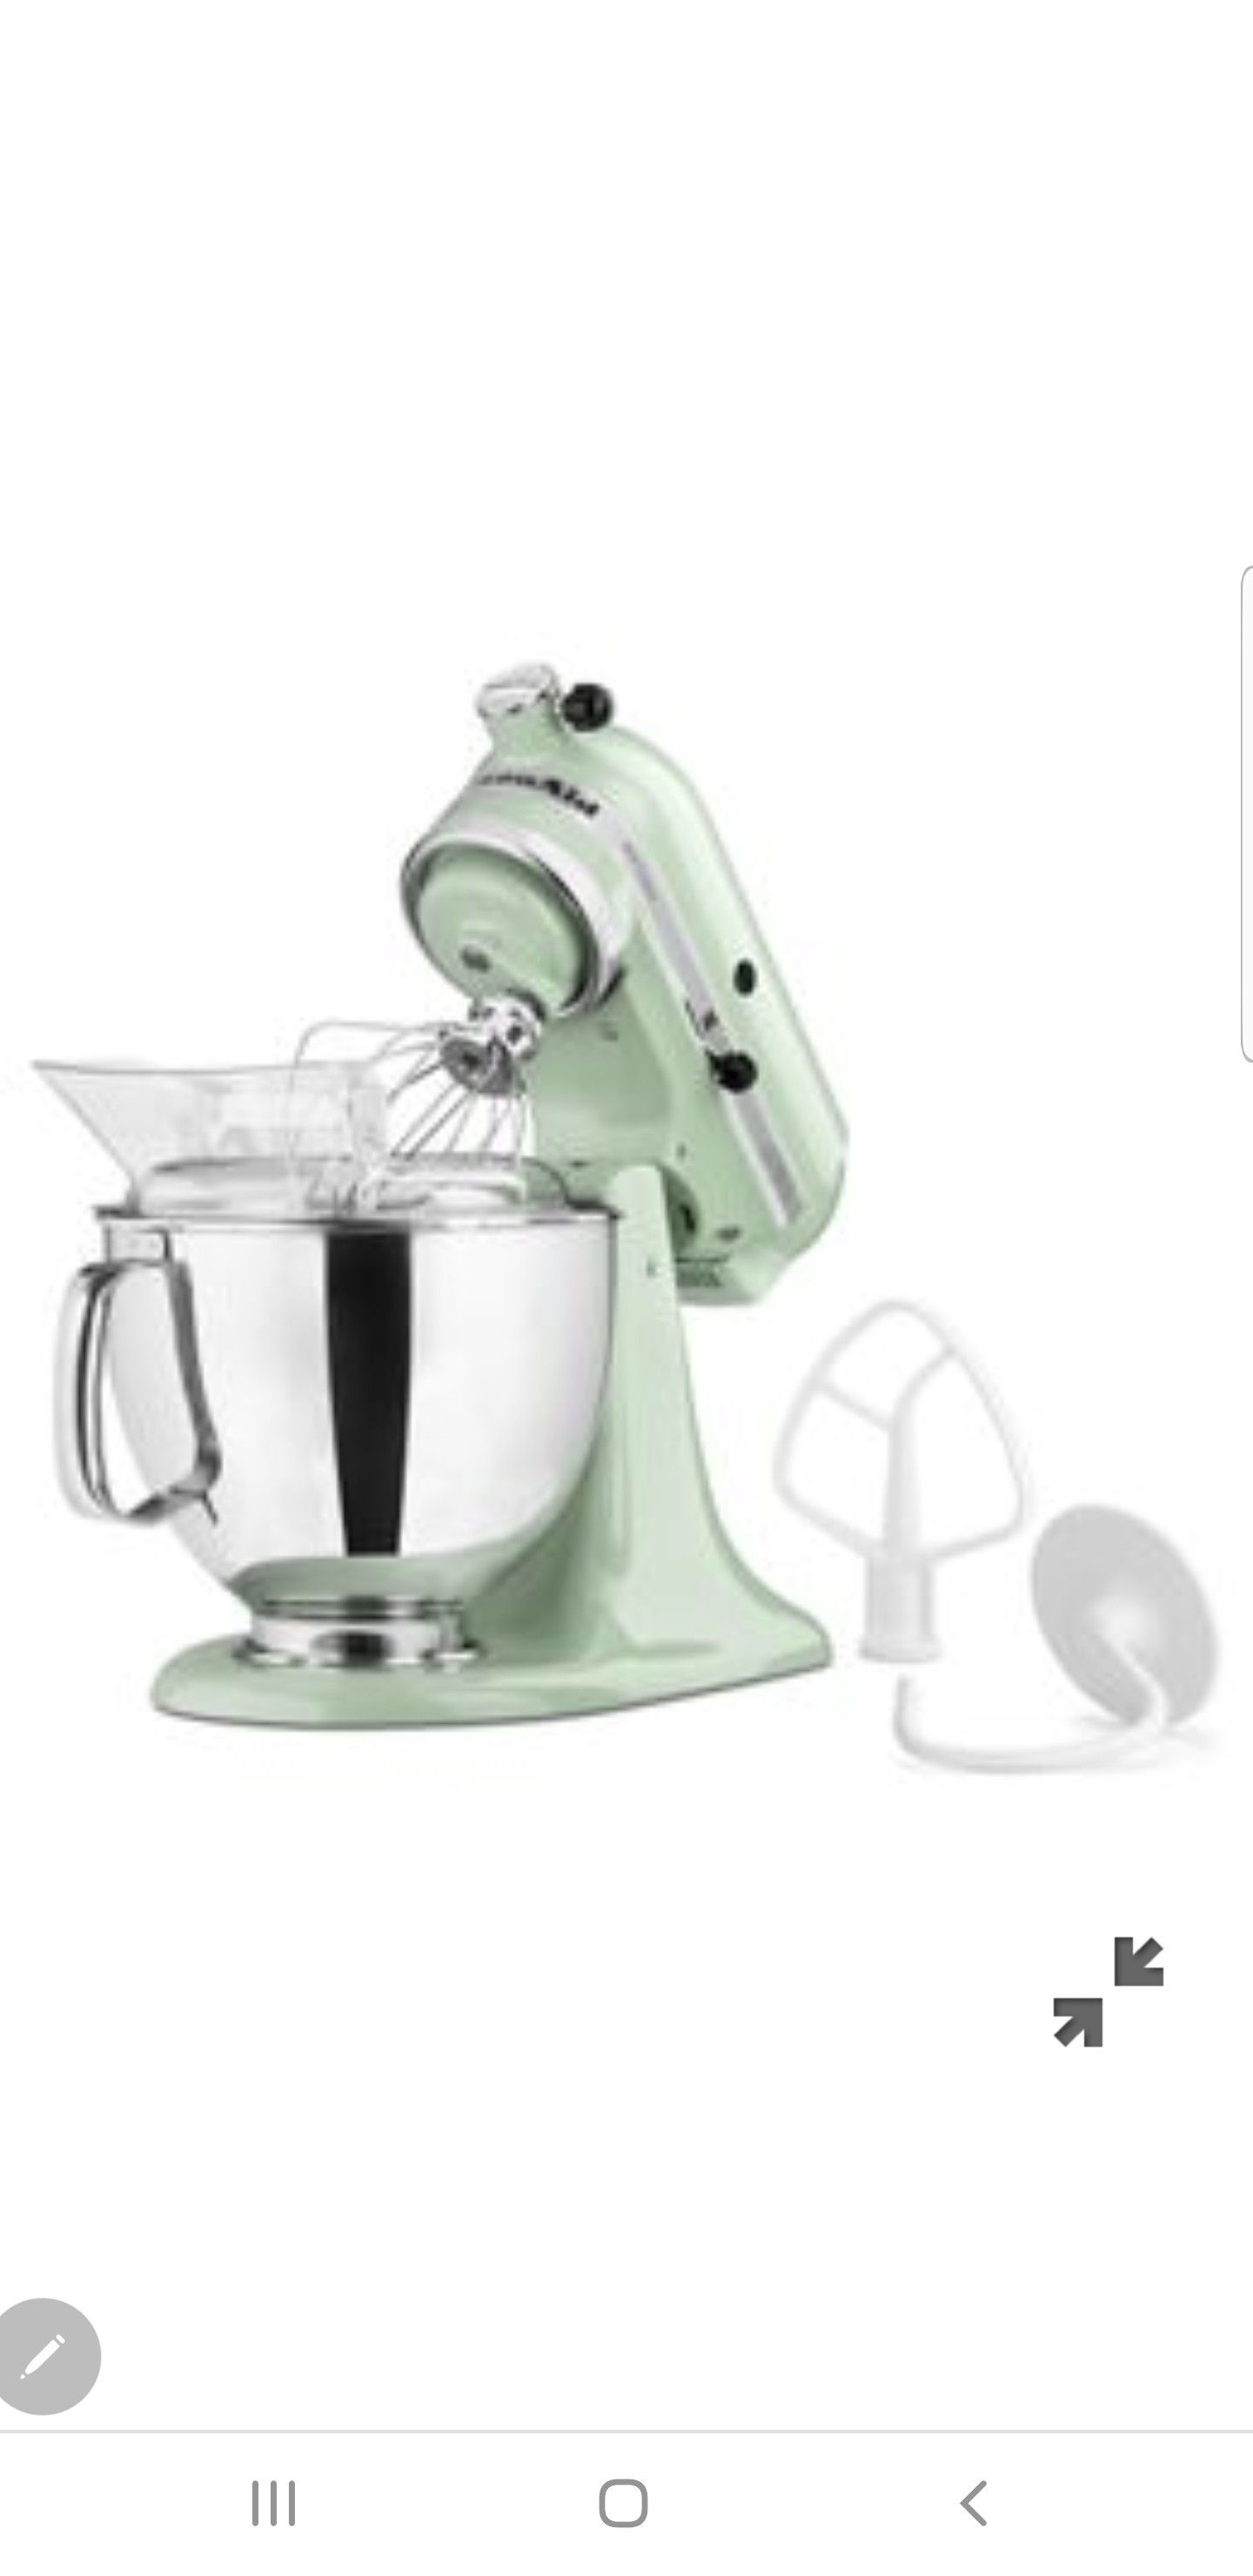 Kitchenaid mint green mixer